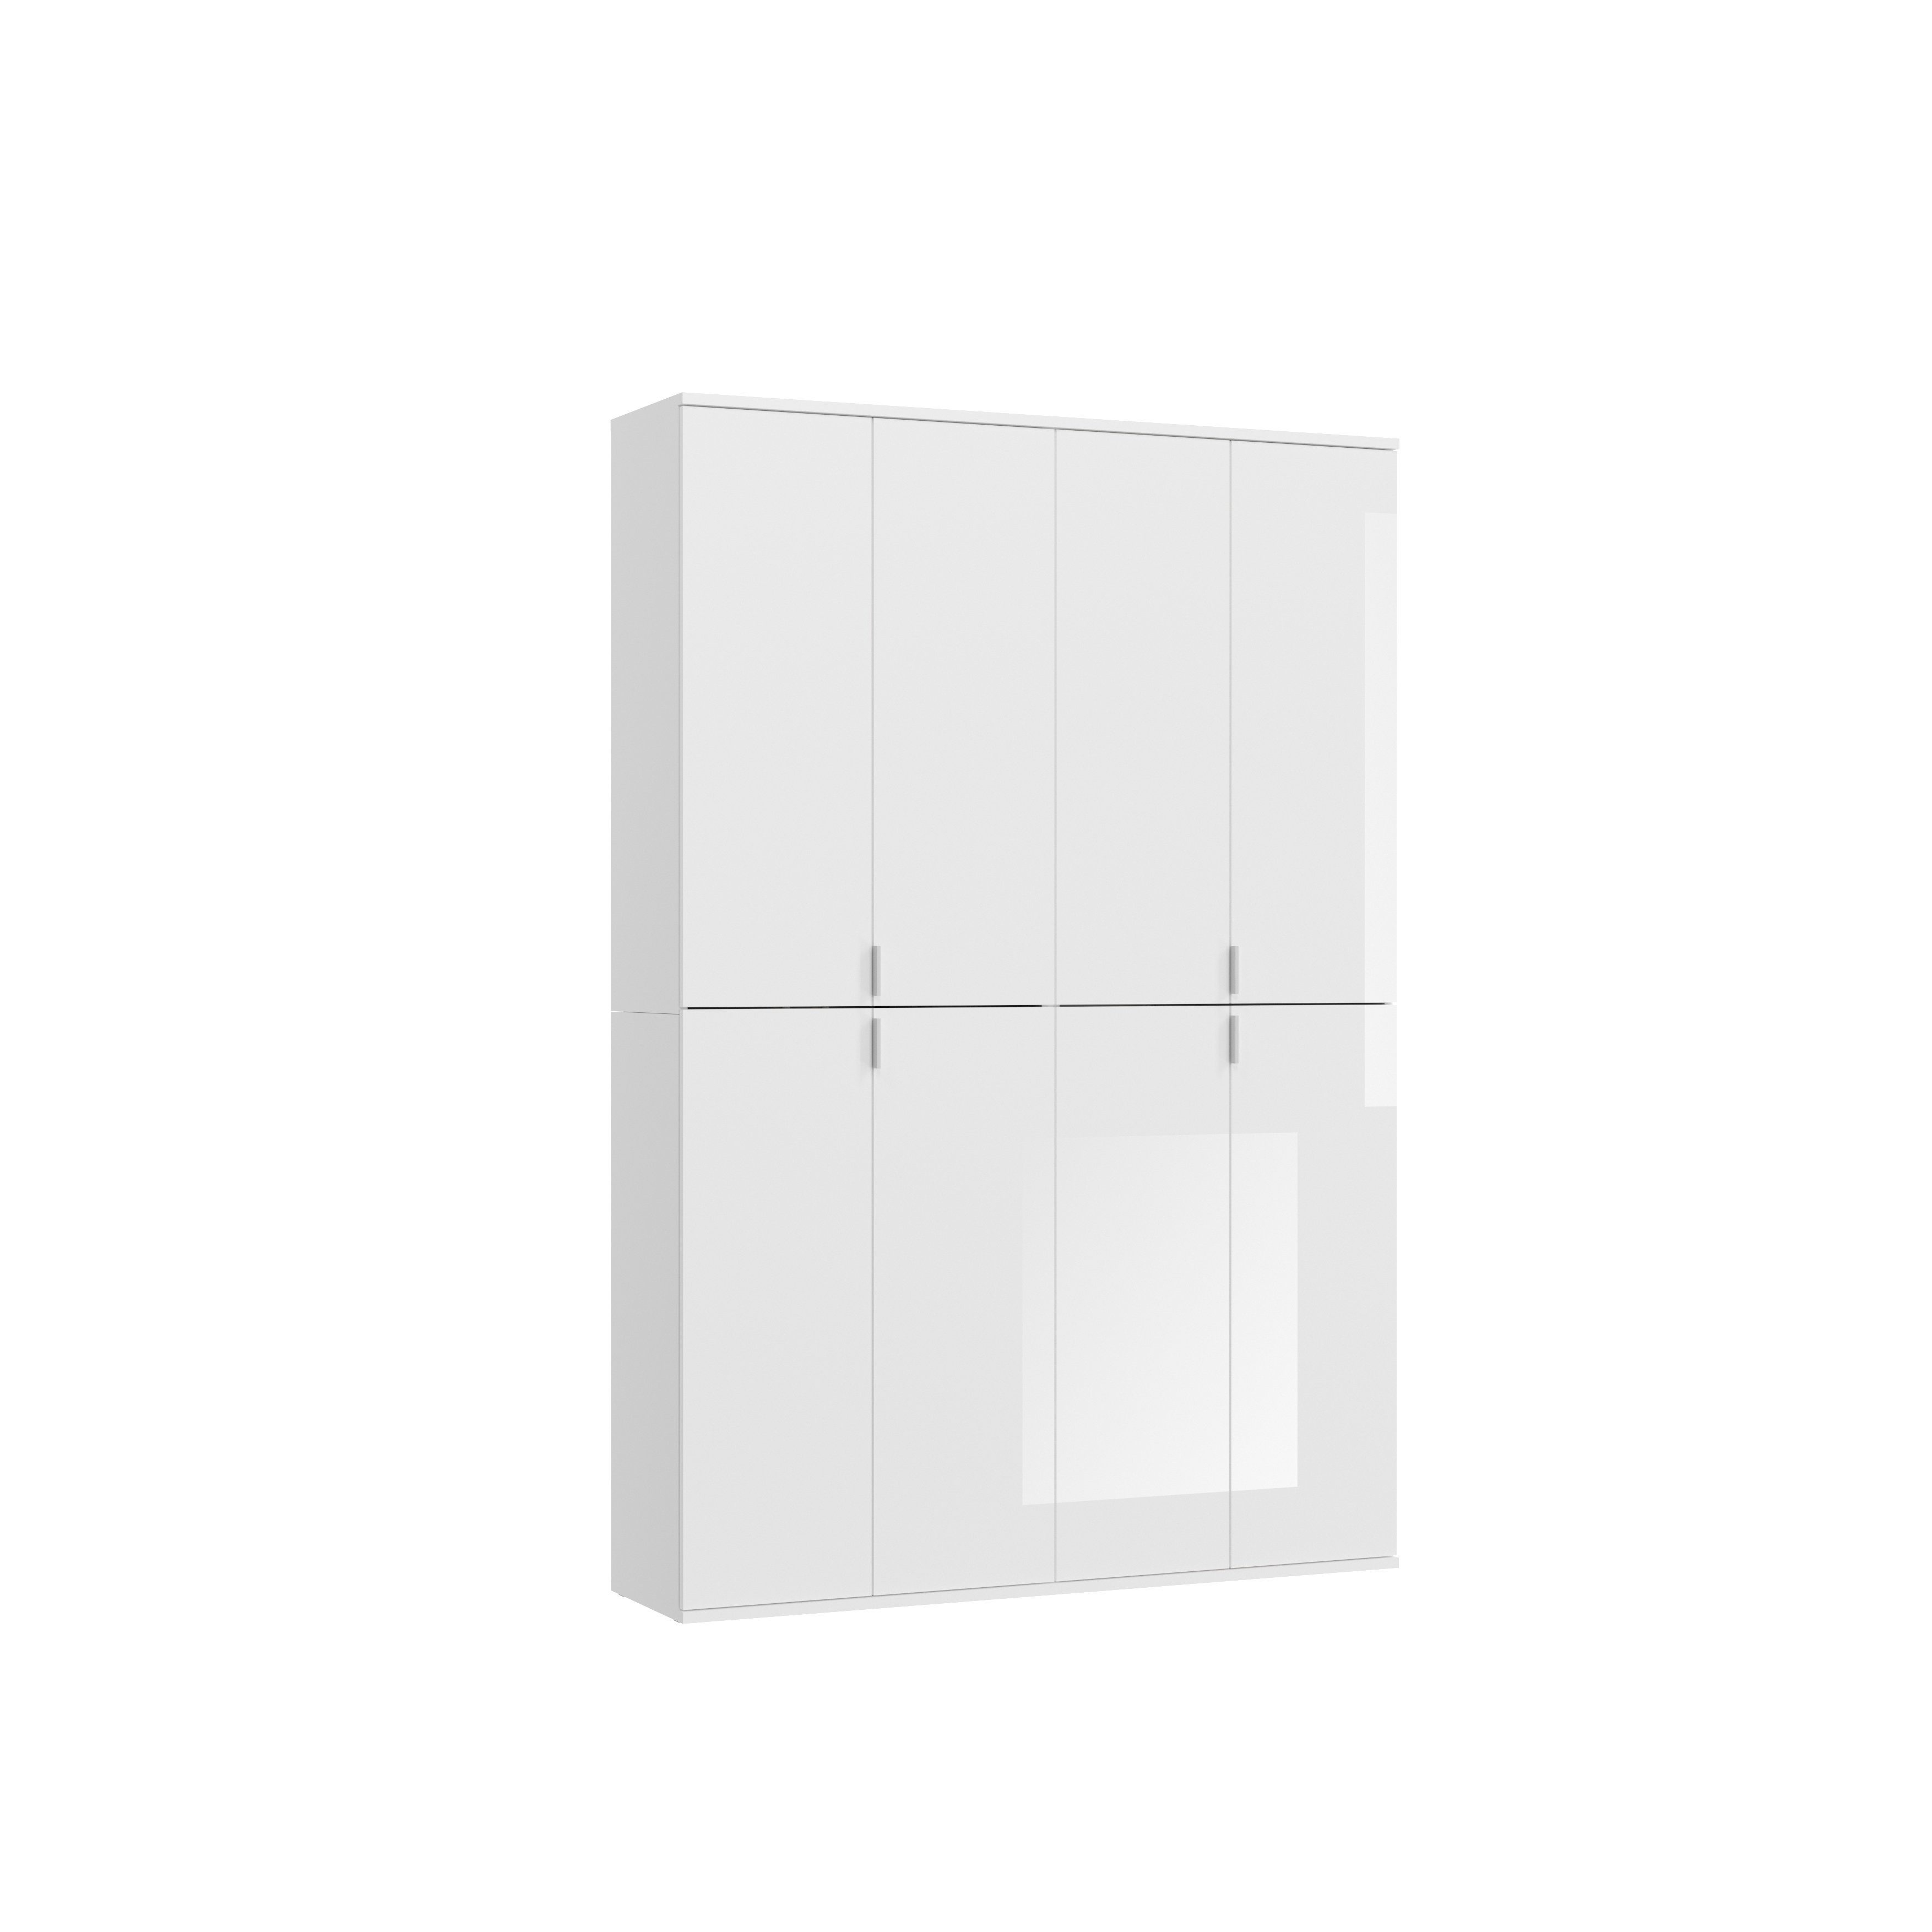 möbelando Garderobenschrank Paterson Eleganter Garderobenschrank aus Spanplatte in Weiß, mit 8 Holztüren, 2 Kleiderstangen und 16 Ablageböden. Breite 130 cm, Höhe 193 cm, Tiefe 34 cm